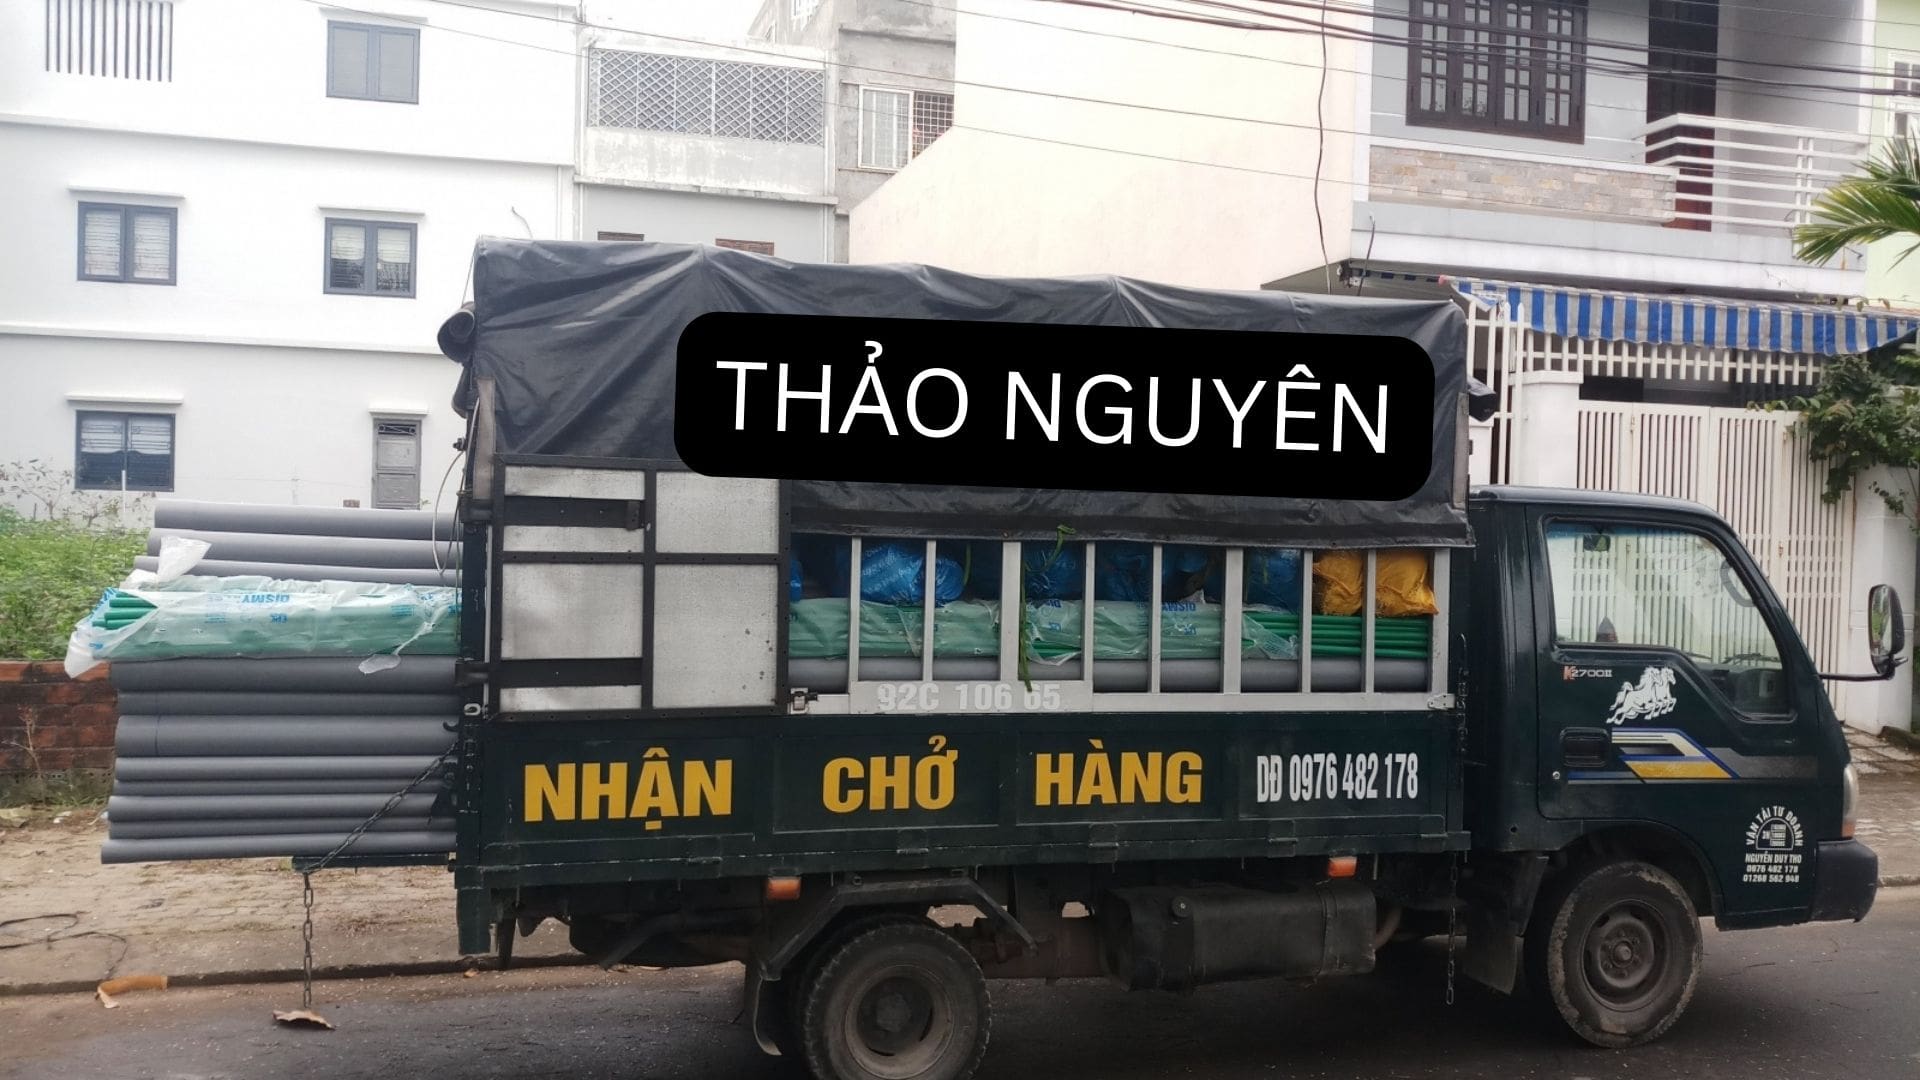 Taxi tải Thảo Nguyên - Dịch vụ chuyển trọ Đà Nẵng nhanh chóng